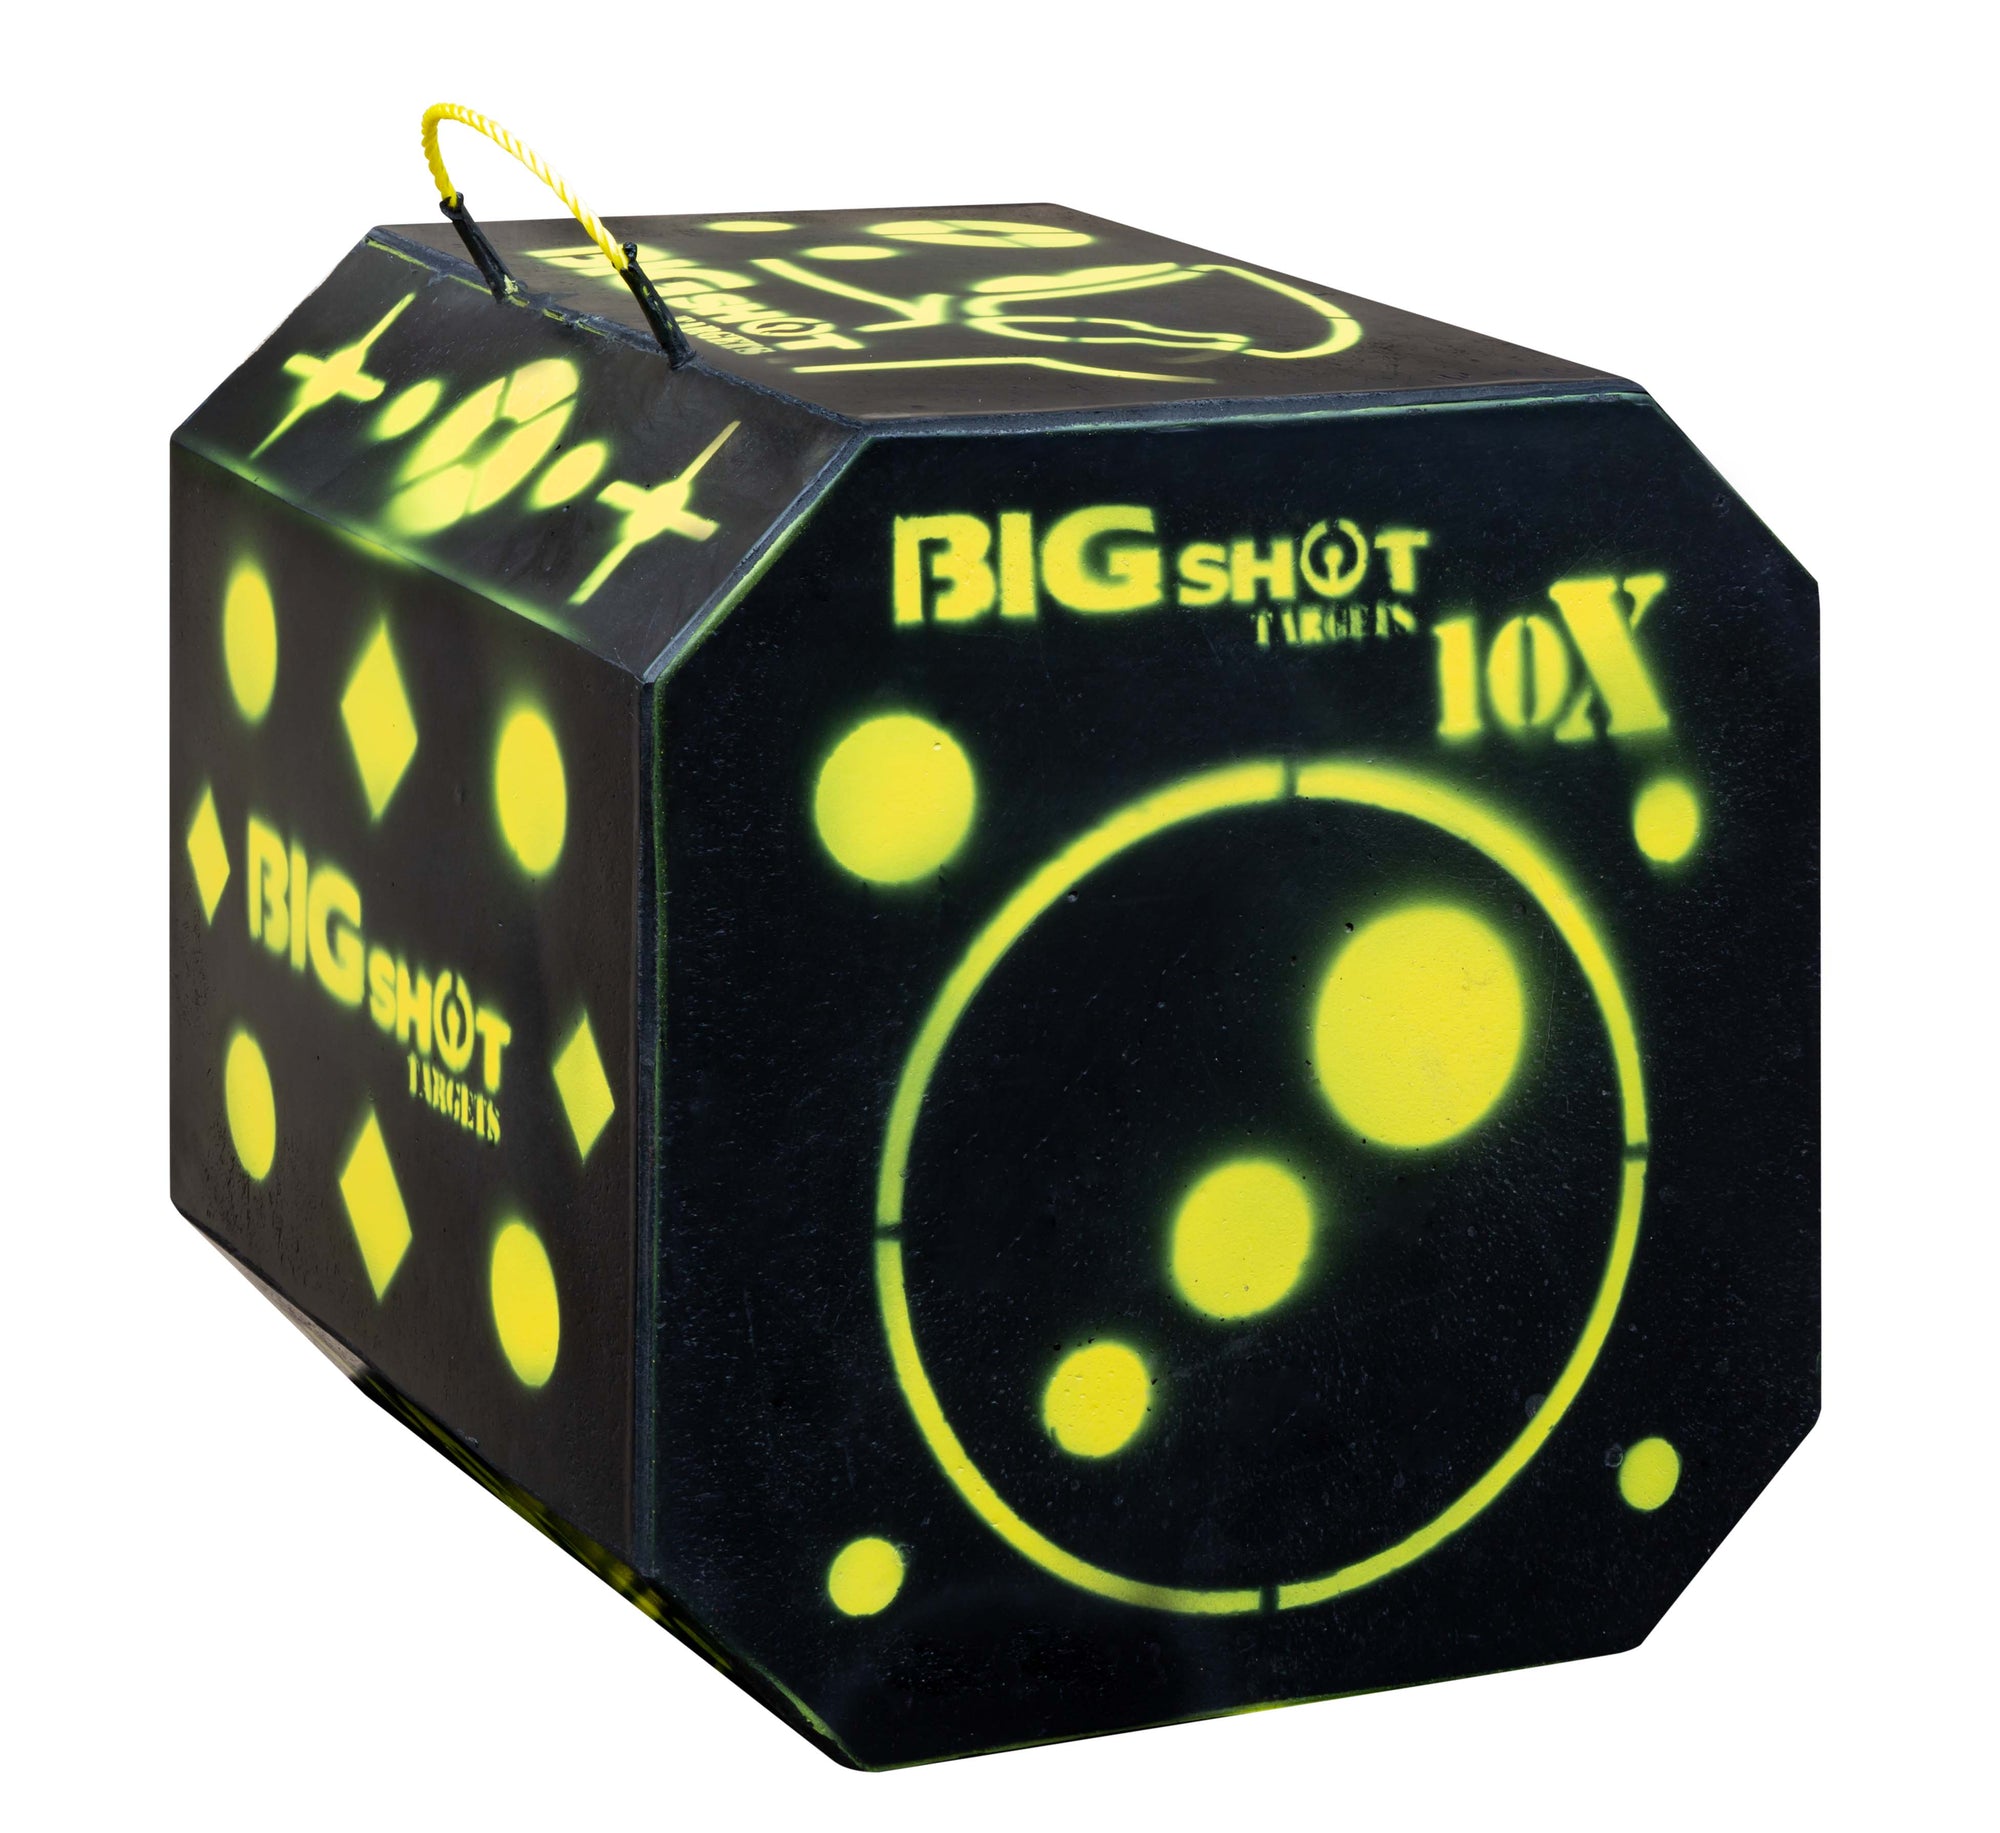 NEW! Titan 10X HD BigShot Target